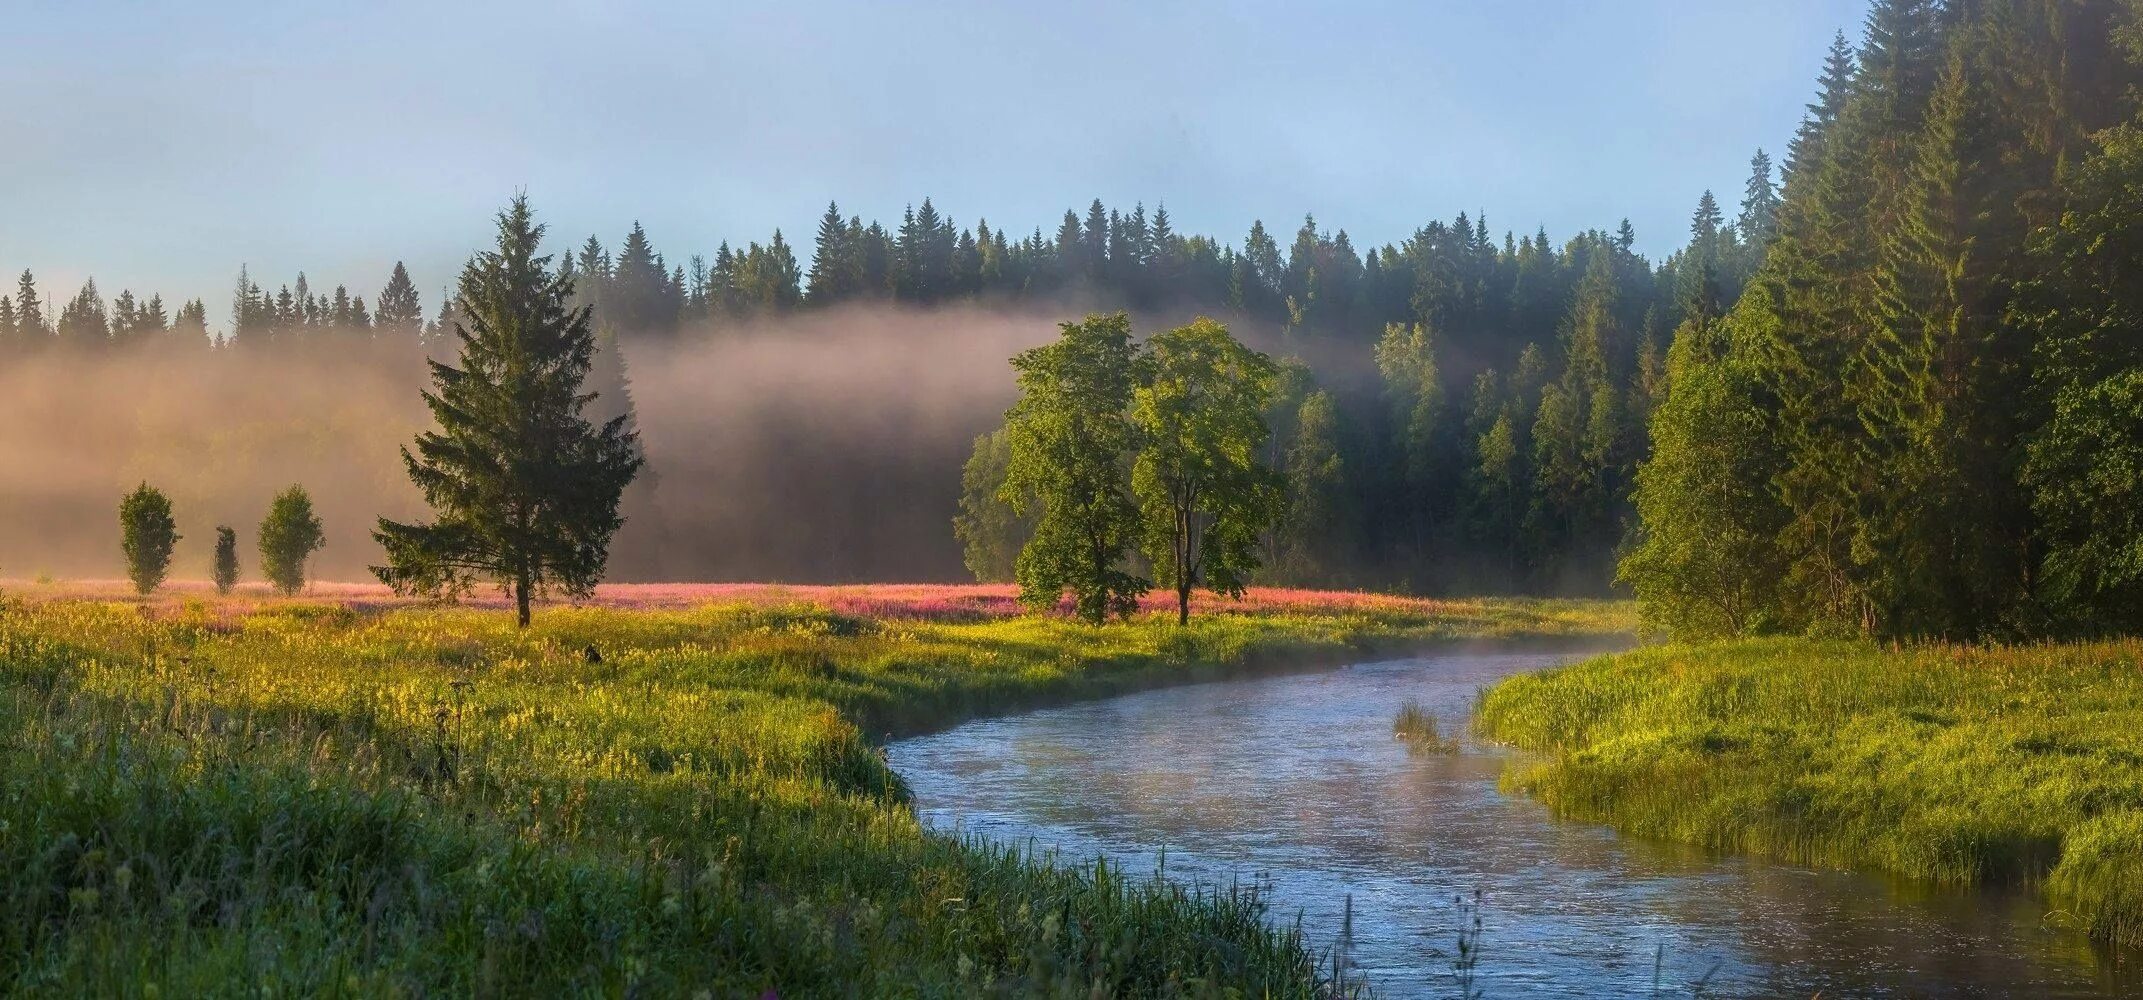 Лужский район лето лес. Фёдор Лашков фотограф река. Handersen ru